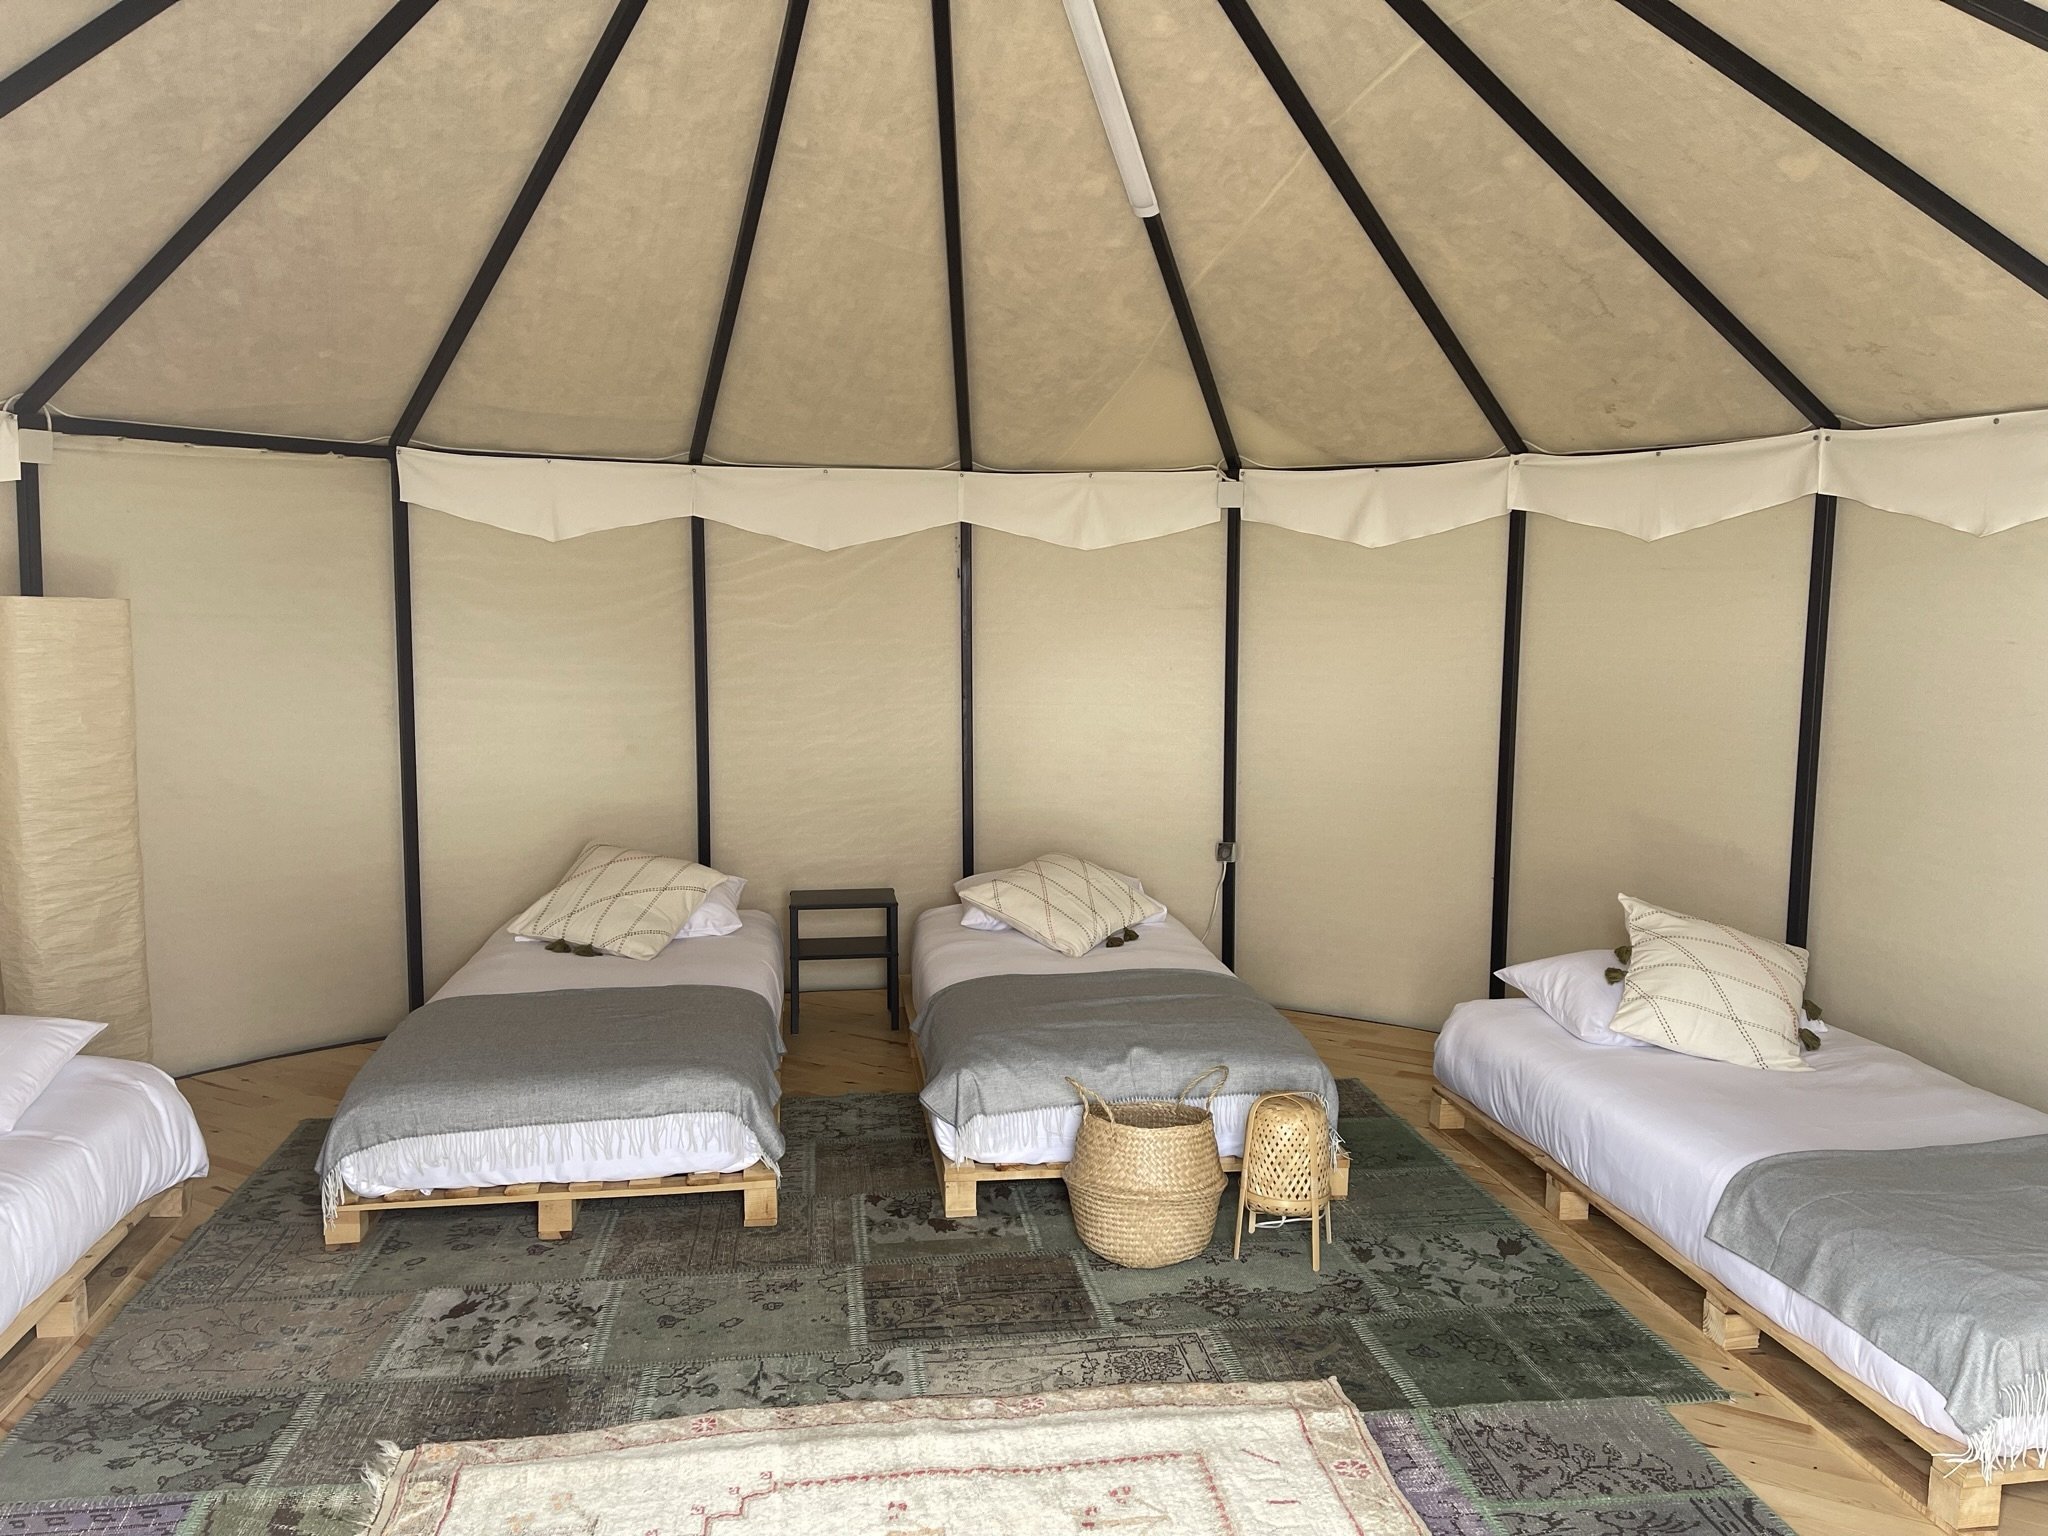 Lake Tuz Nomad Camping di distrik Eskil Aksaray di Turki tengah menawarkan kesempatan liburan alternatif, Aksaray, Turki, 12 Mei 2022. (AA Photo)